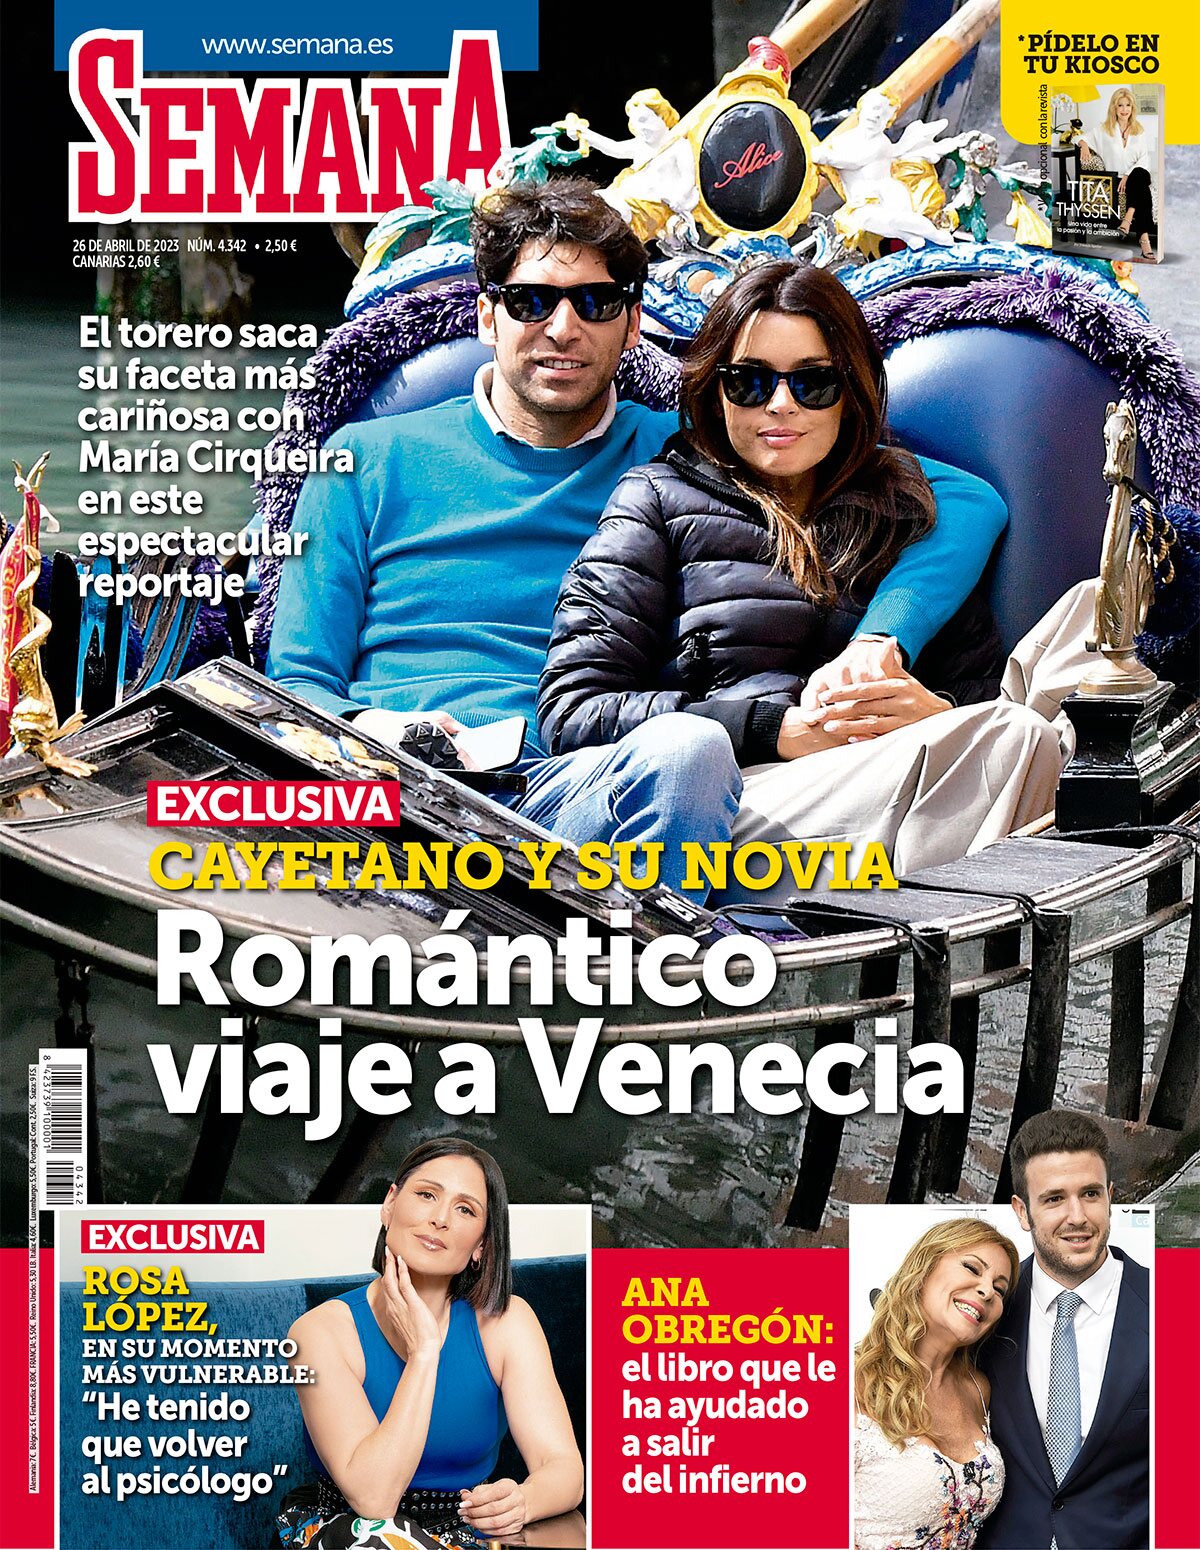 Cayetano Rivera y su novia en portada / Foto: Revista Semana